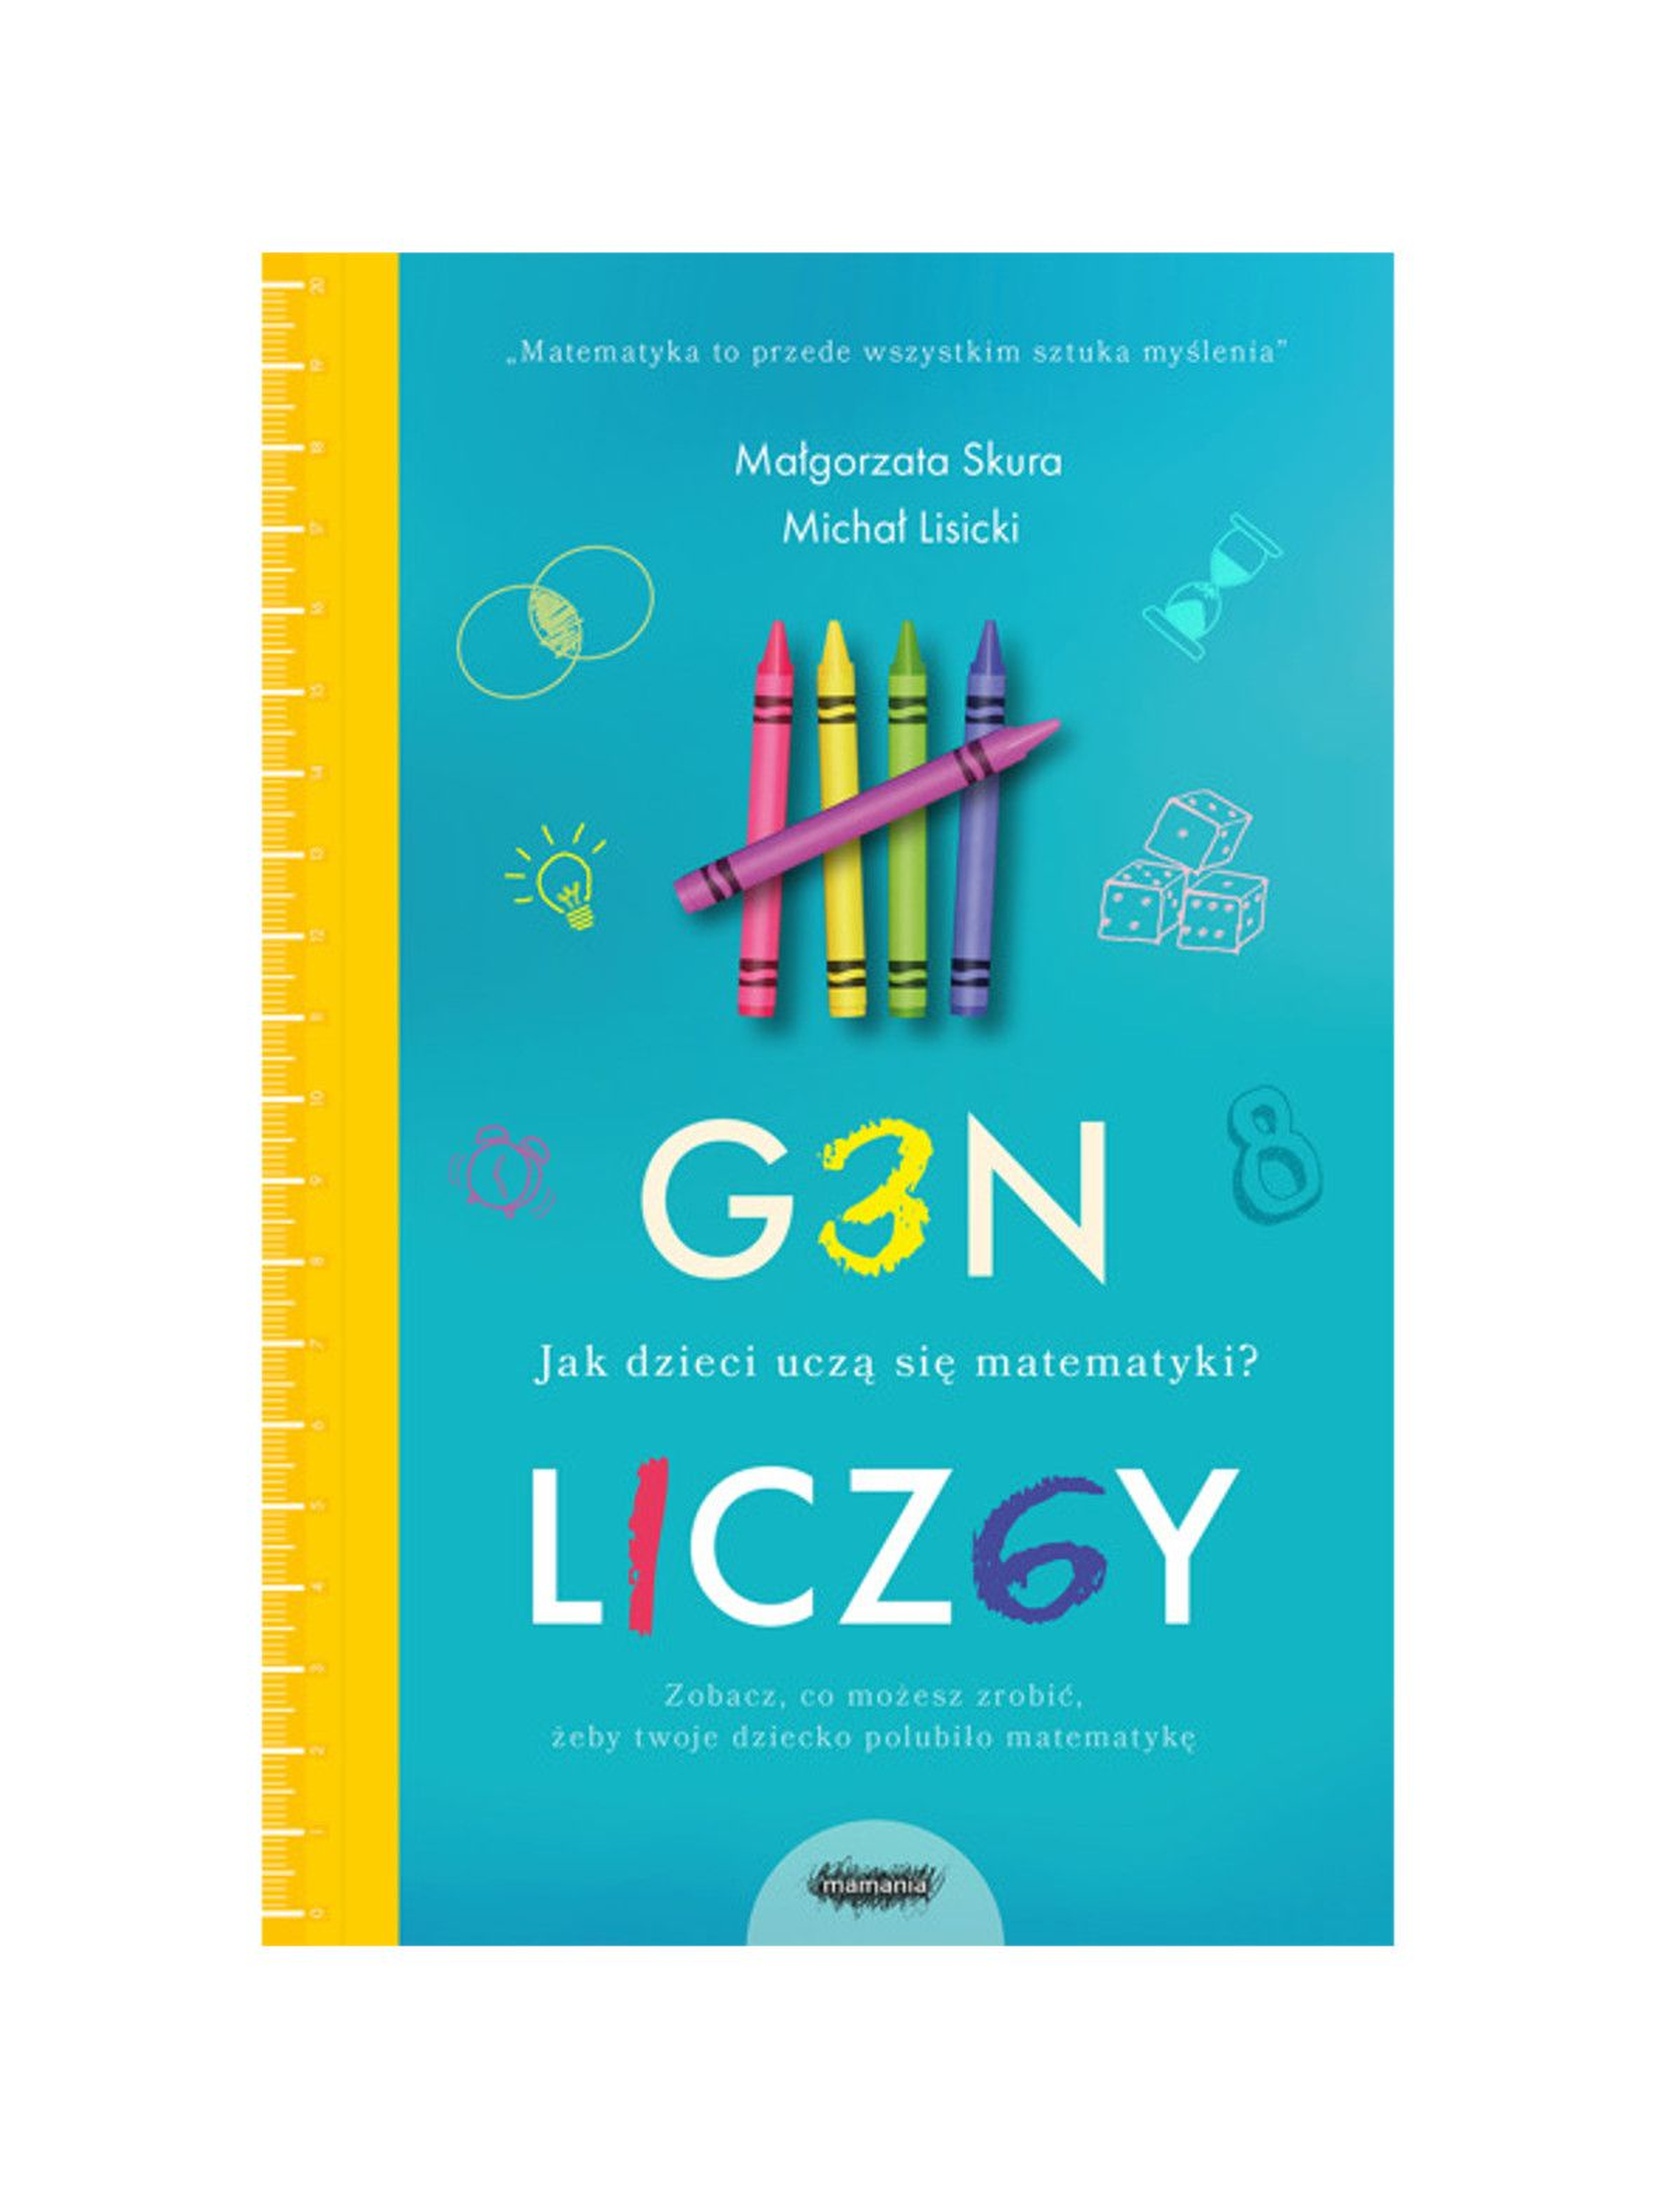 Książka dla rodziców "Gen liczby. Jak dzieci uczą się matematyki"- M.Skura, M.Lisicki